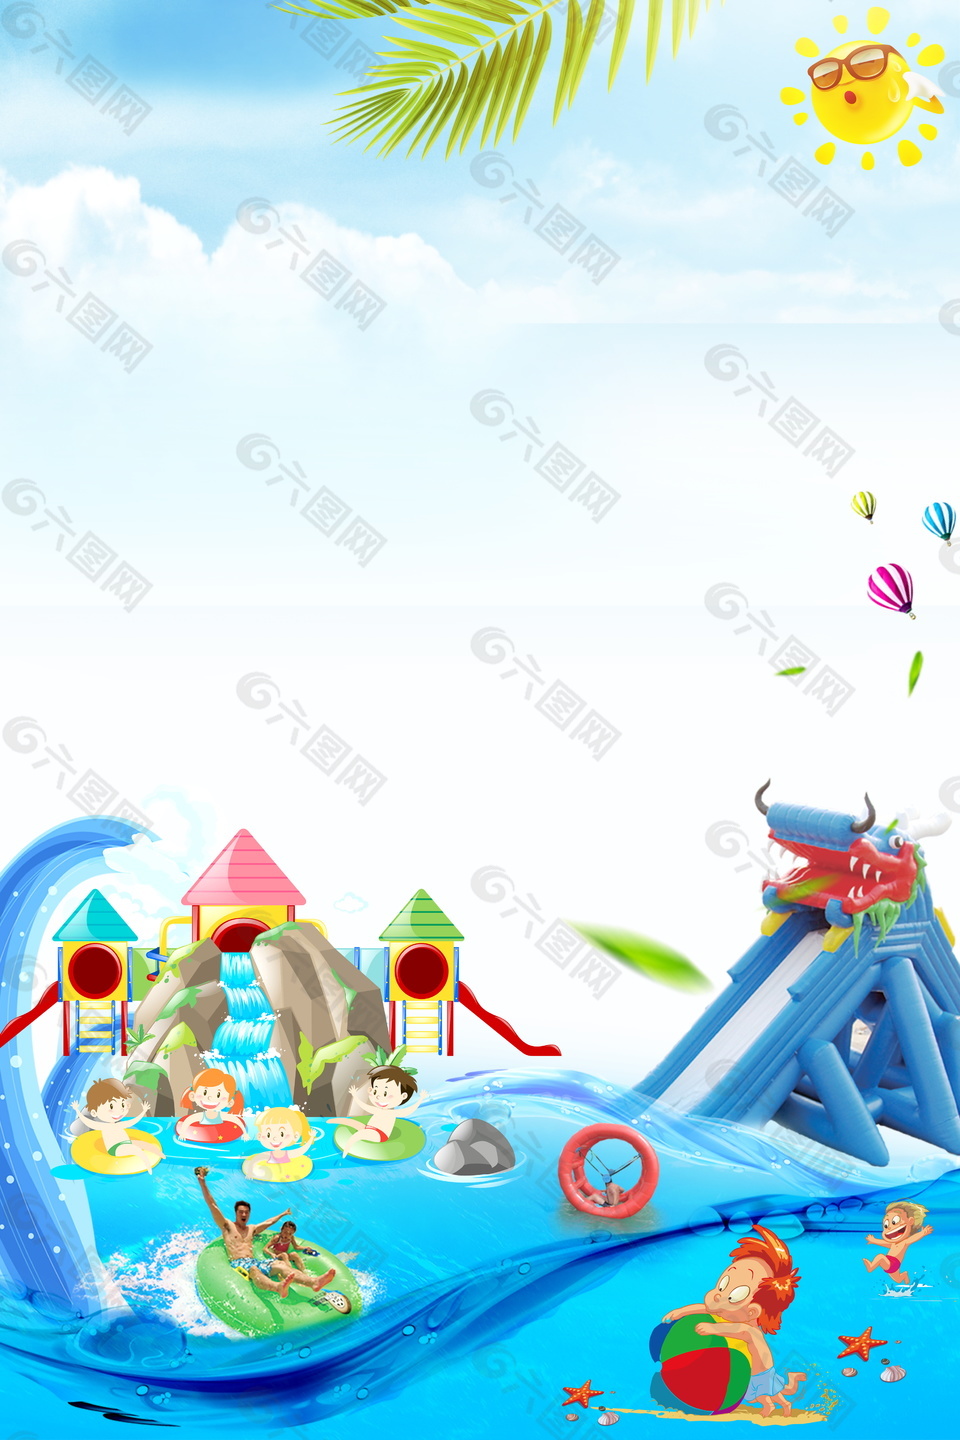 孩童娱乐水上乐园背景素材